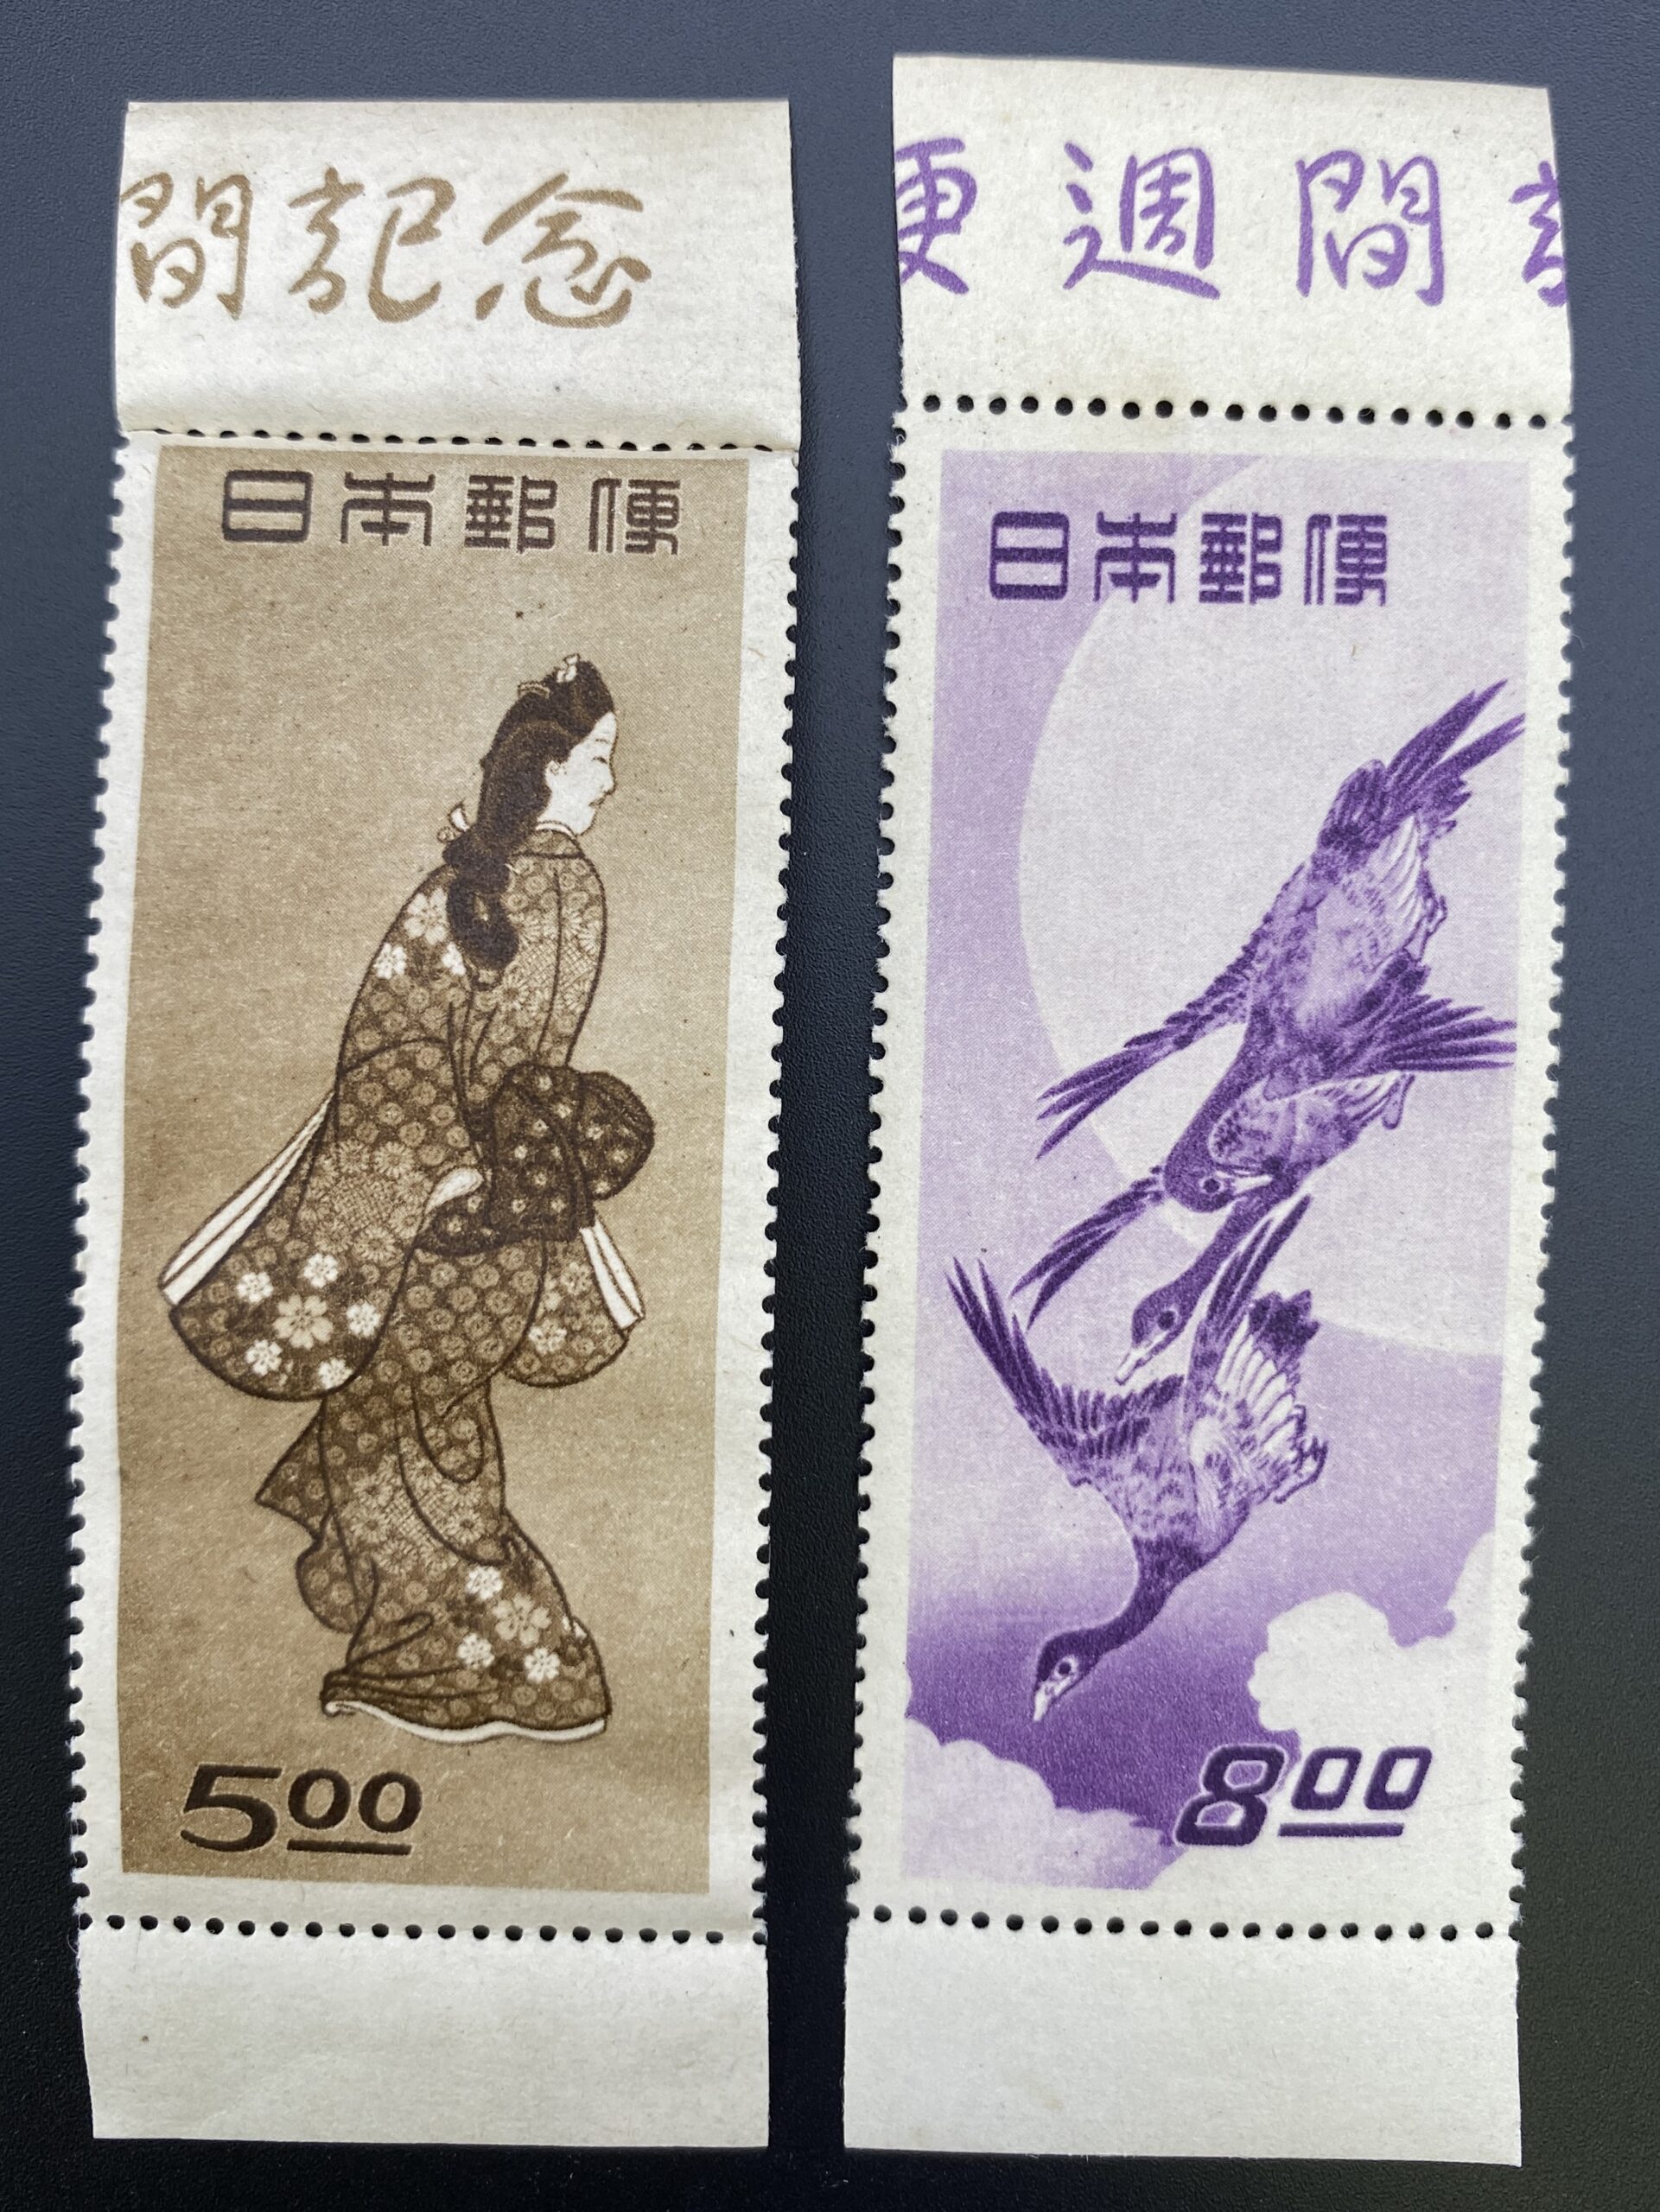 日本切手を買取致しました